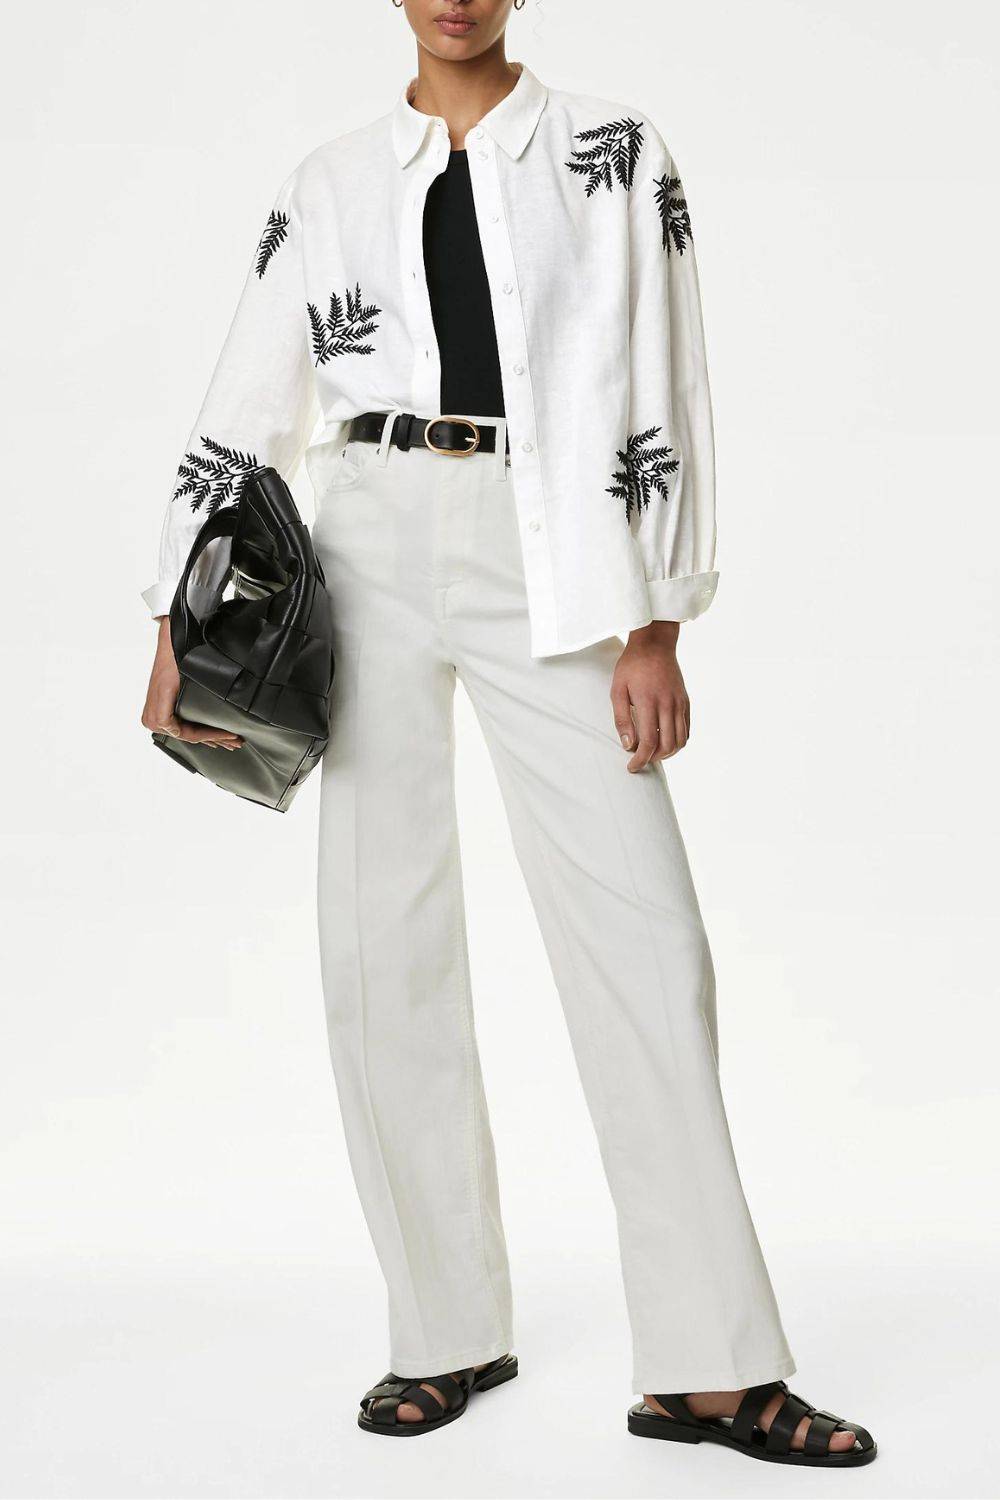 Klasyczna biała koszula damska z twistem, Marks & Spencer, 255 zł (Fot. materiały prasowe)